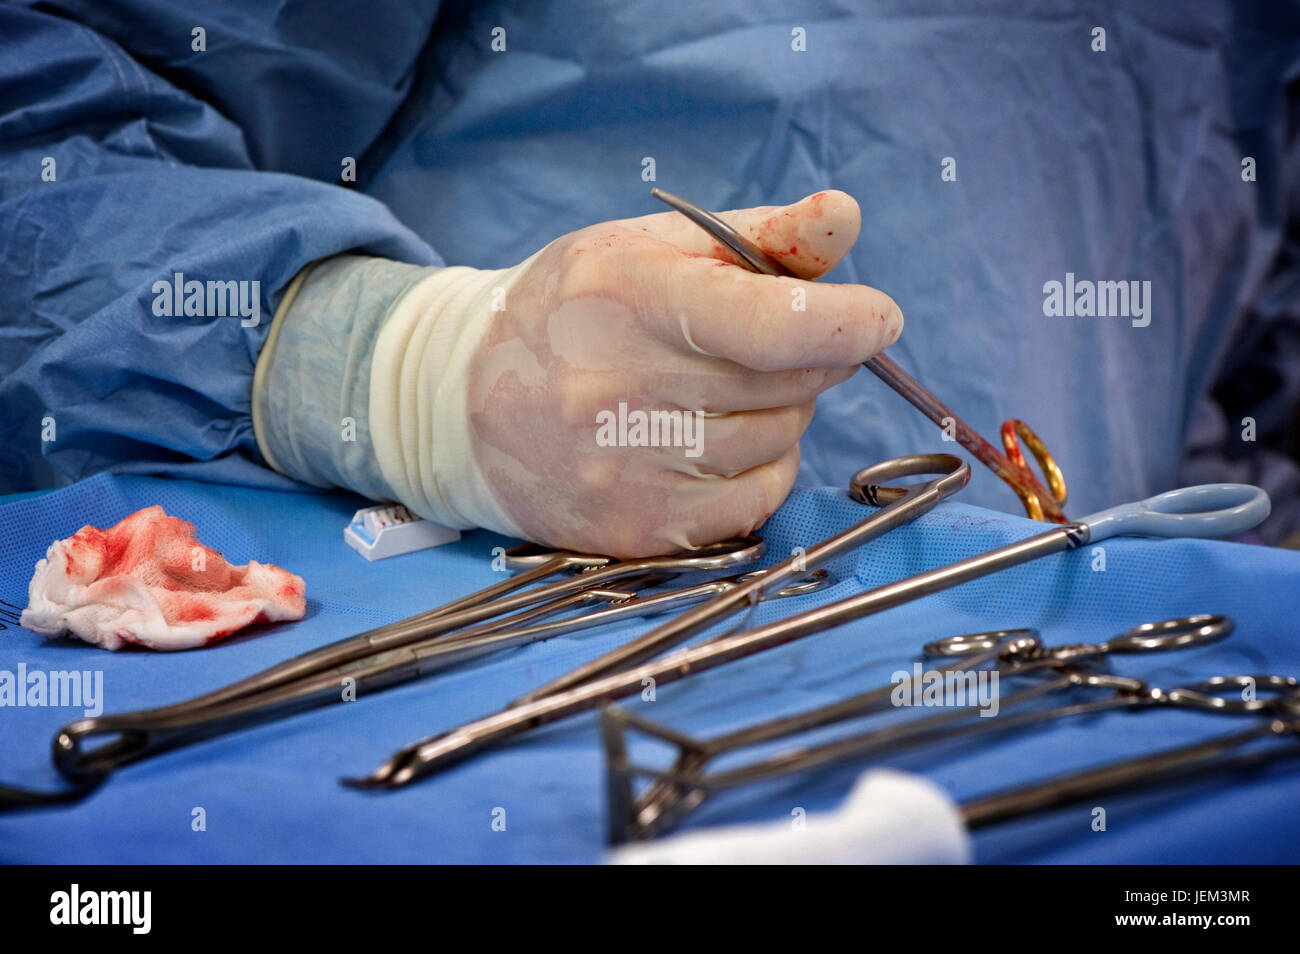 Chirurgischen operativen Abteilung Praktiker sind die wichtigsten OP-Assistenz und behandeln alle chirurgischen Instrumente während eines Eingriffs. Stockfoto